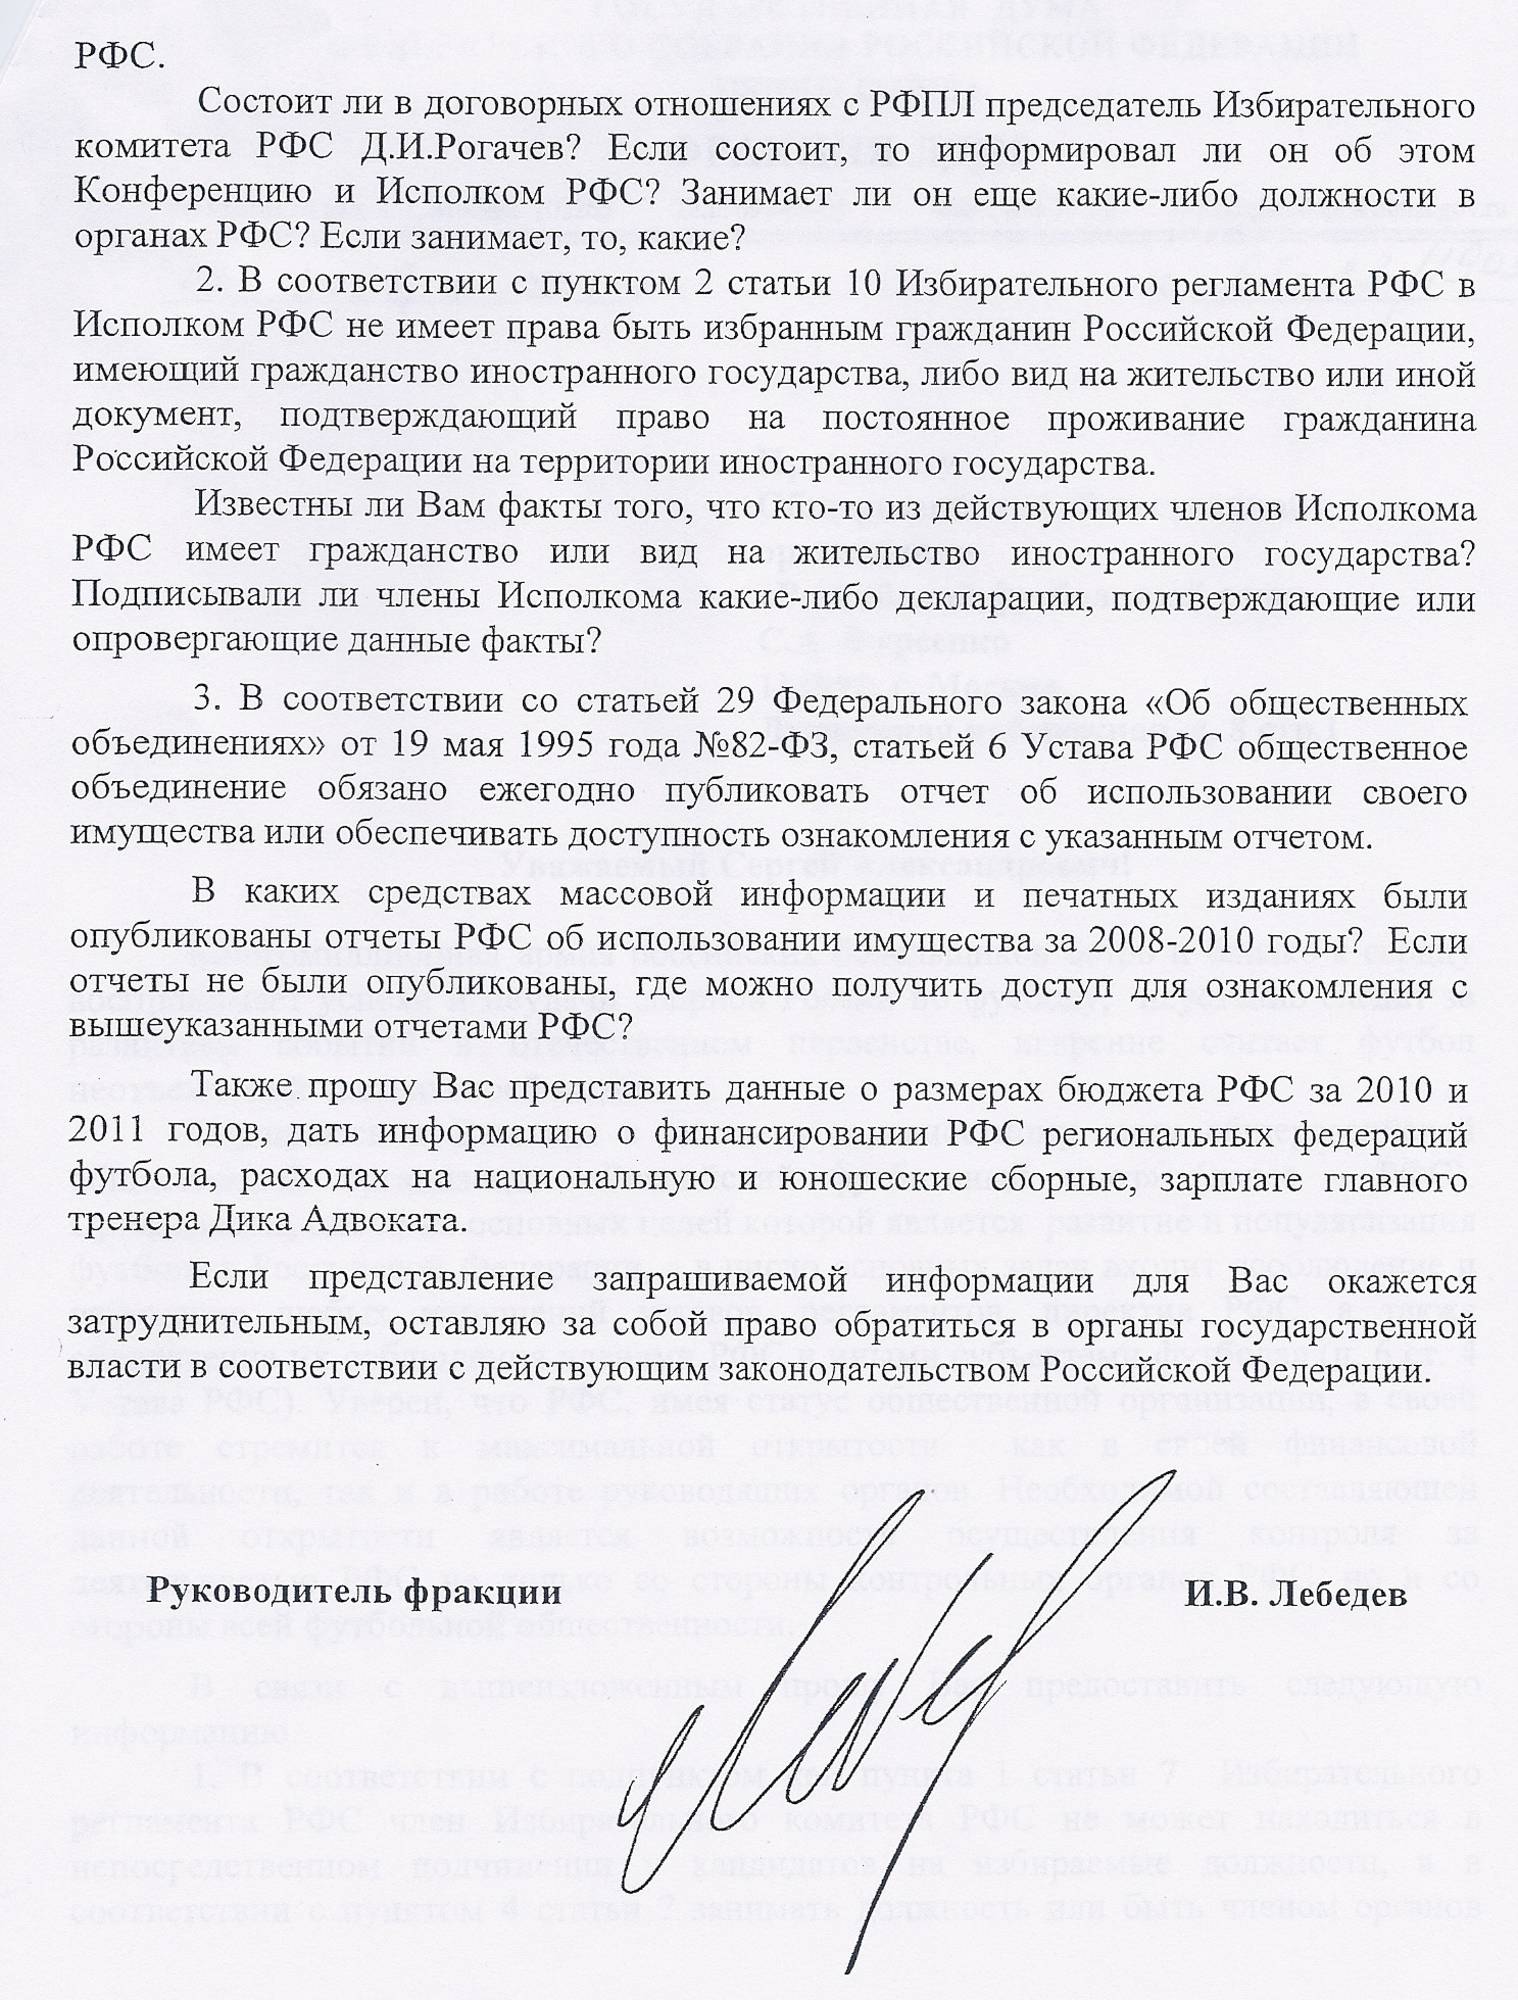 Скан второй части письма Игоря Лебедева президенту РФС Фурсенко 